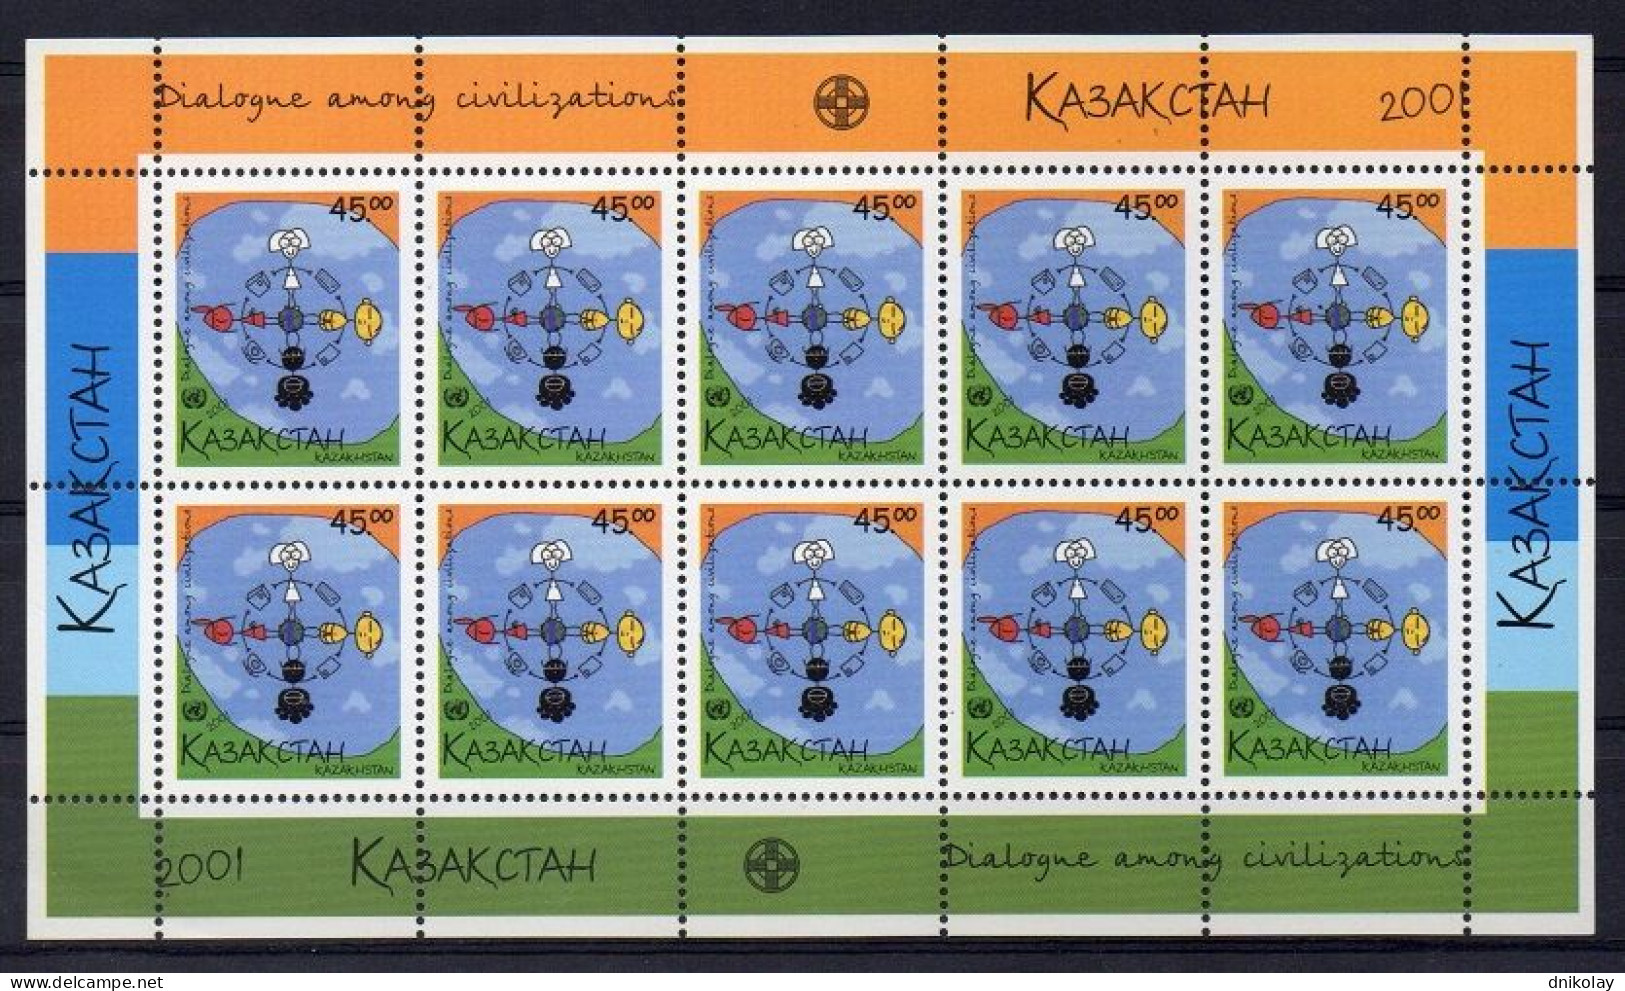 2001 348 Kazakhstan United Nations Year Of Dialogue Among Civilizations MNH - Kazachstan